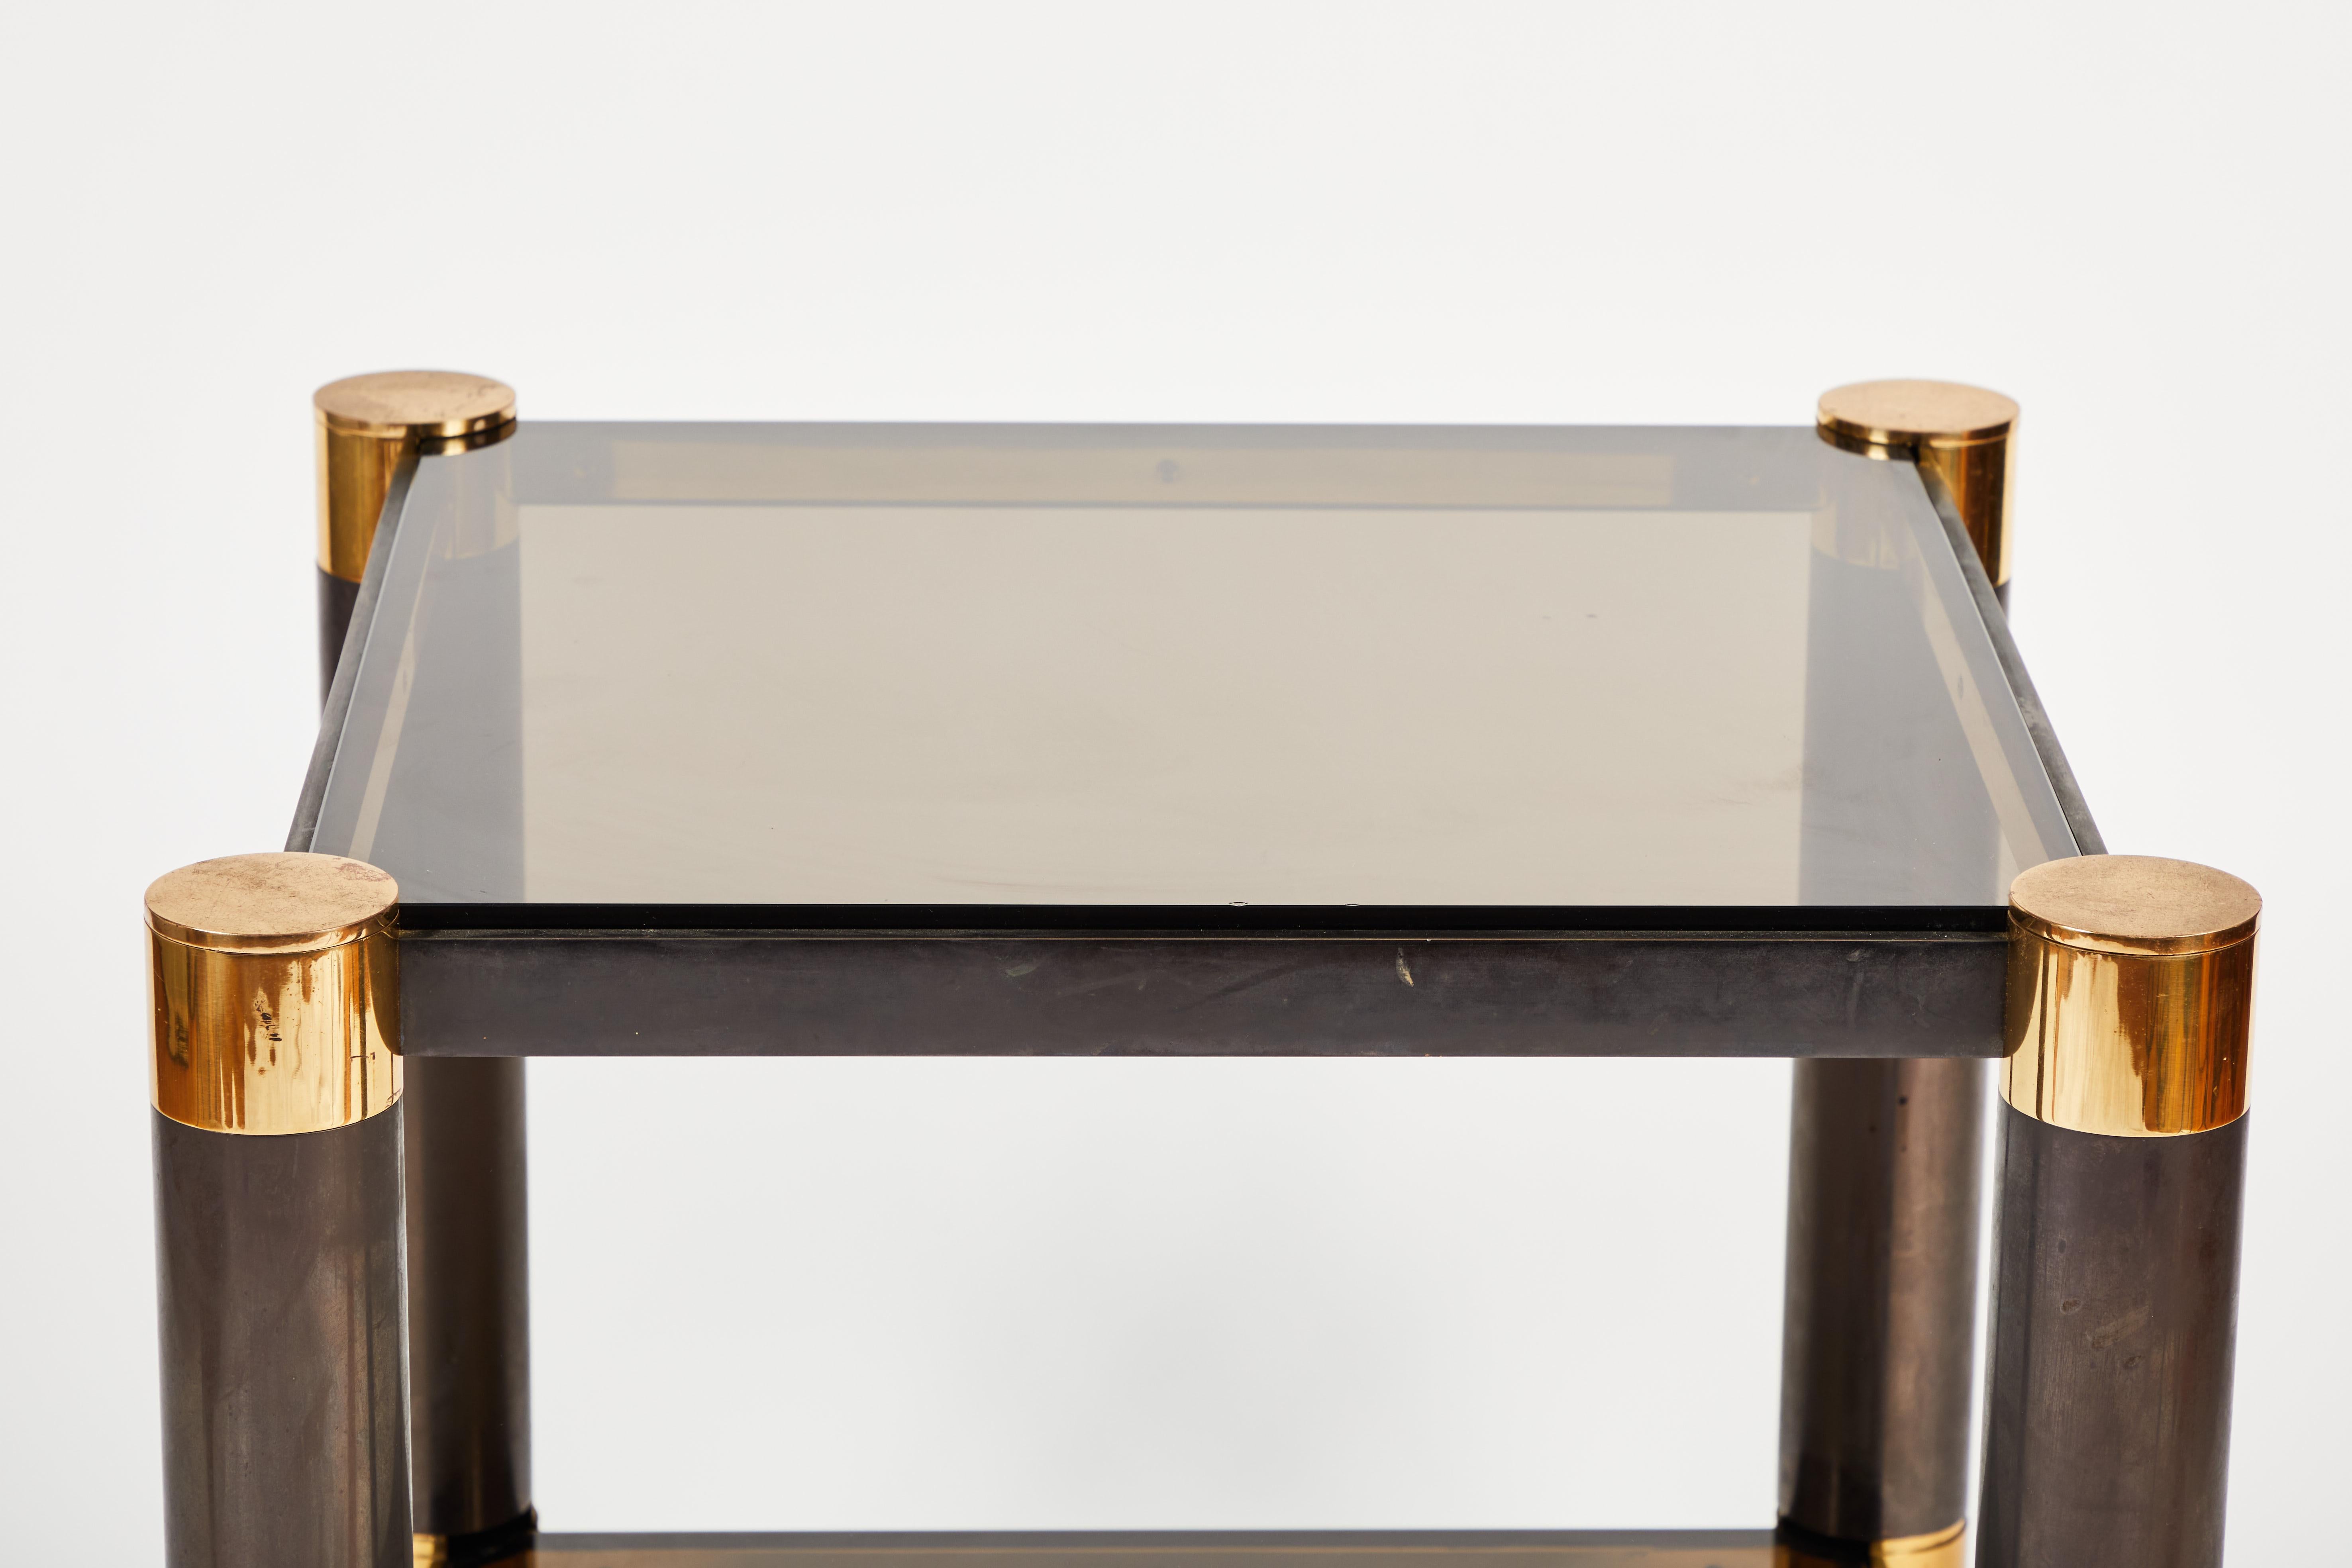 Table d'appoint de Karl Springer en bronze, laiton, verre et bois émaillé. Fabriqué à New York vers 1980. Cette belle pièce présente une légère oxydation sur le bronze et le laiton qui correspond à l'âge. Il y a quelques rayures sur le verre et de